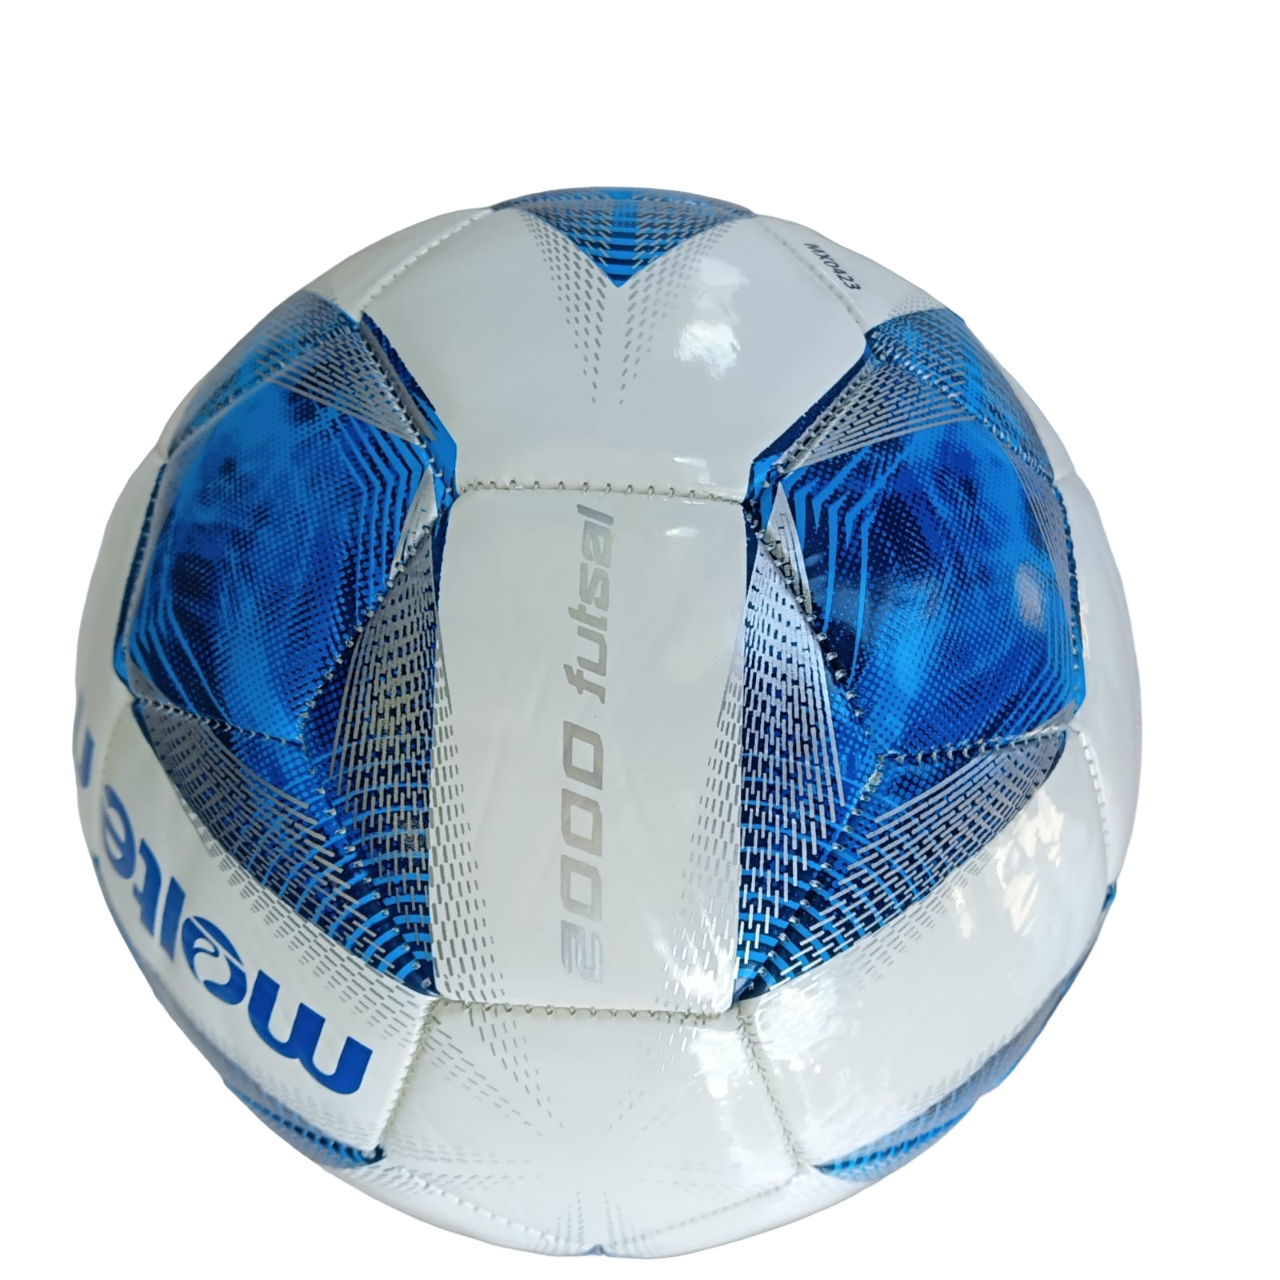 Molten pallone da calcetto a rimbalzo ridotto Vantaggio Mordax F9A2000 numero 4